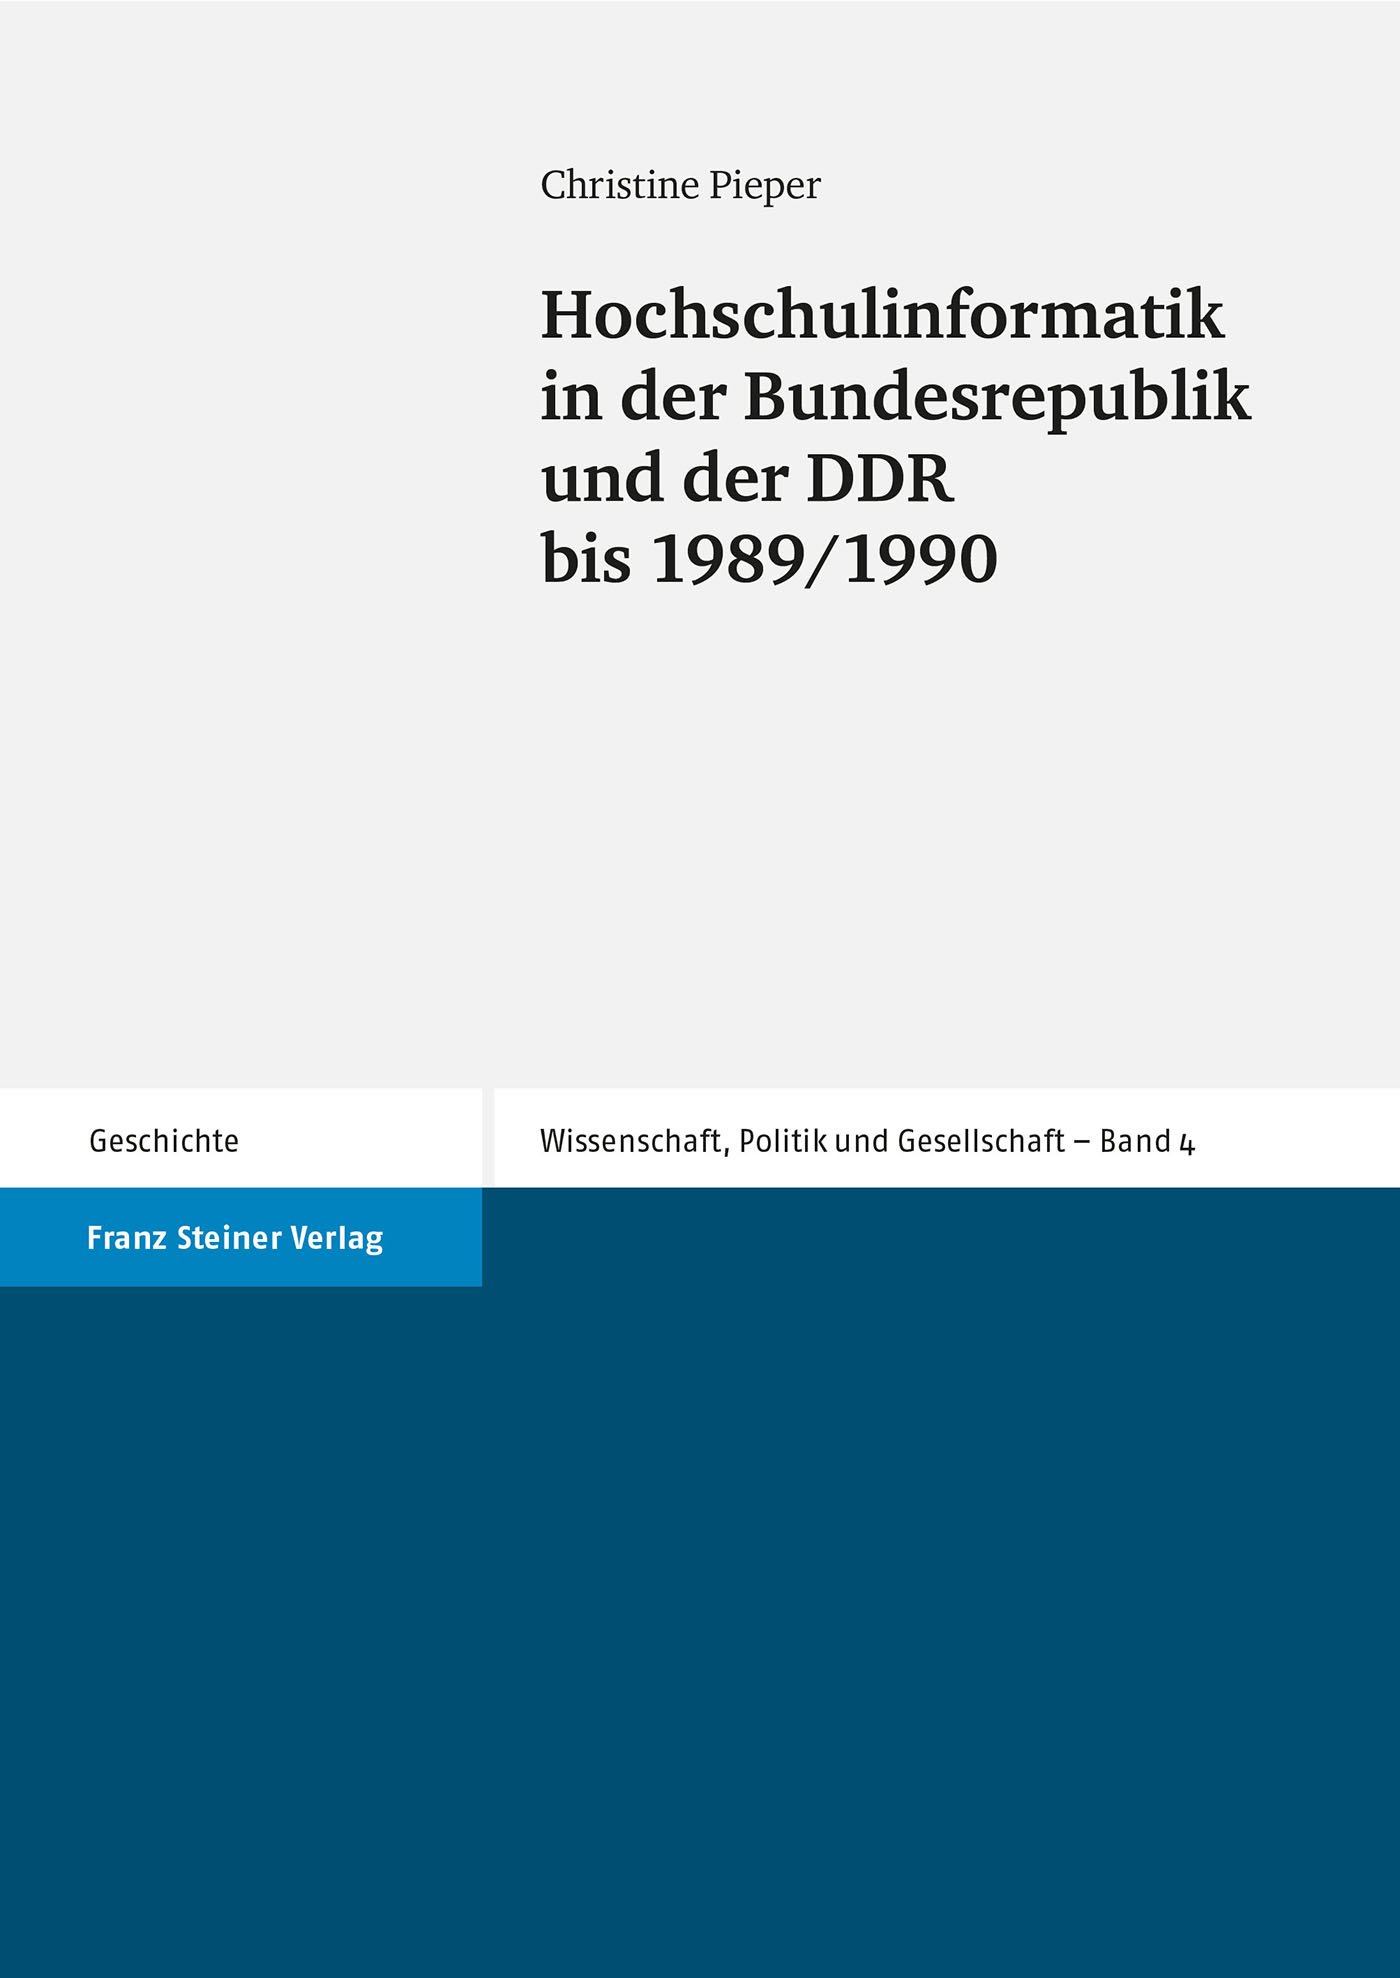 Hochschulinformatik in der Bundesrepublik und der DDR bis 1989/1990